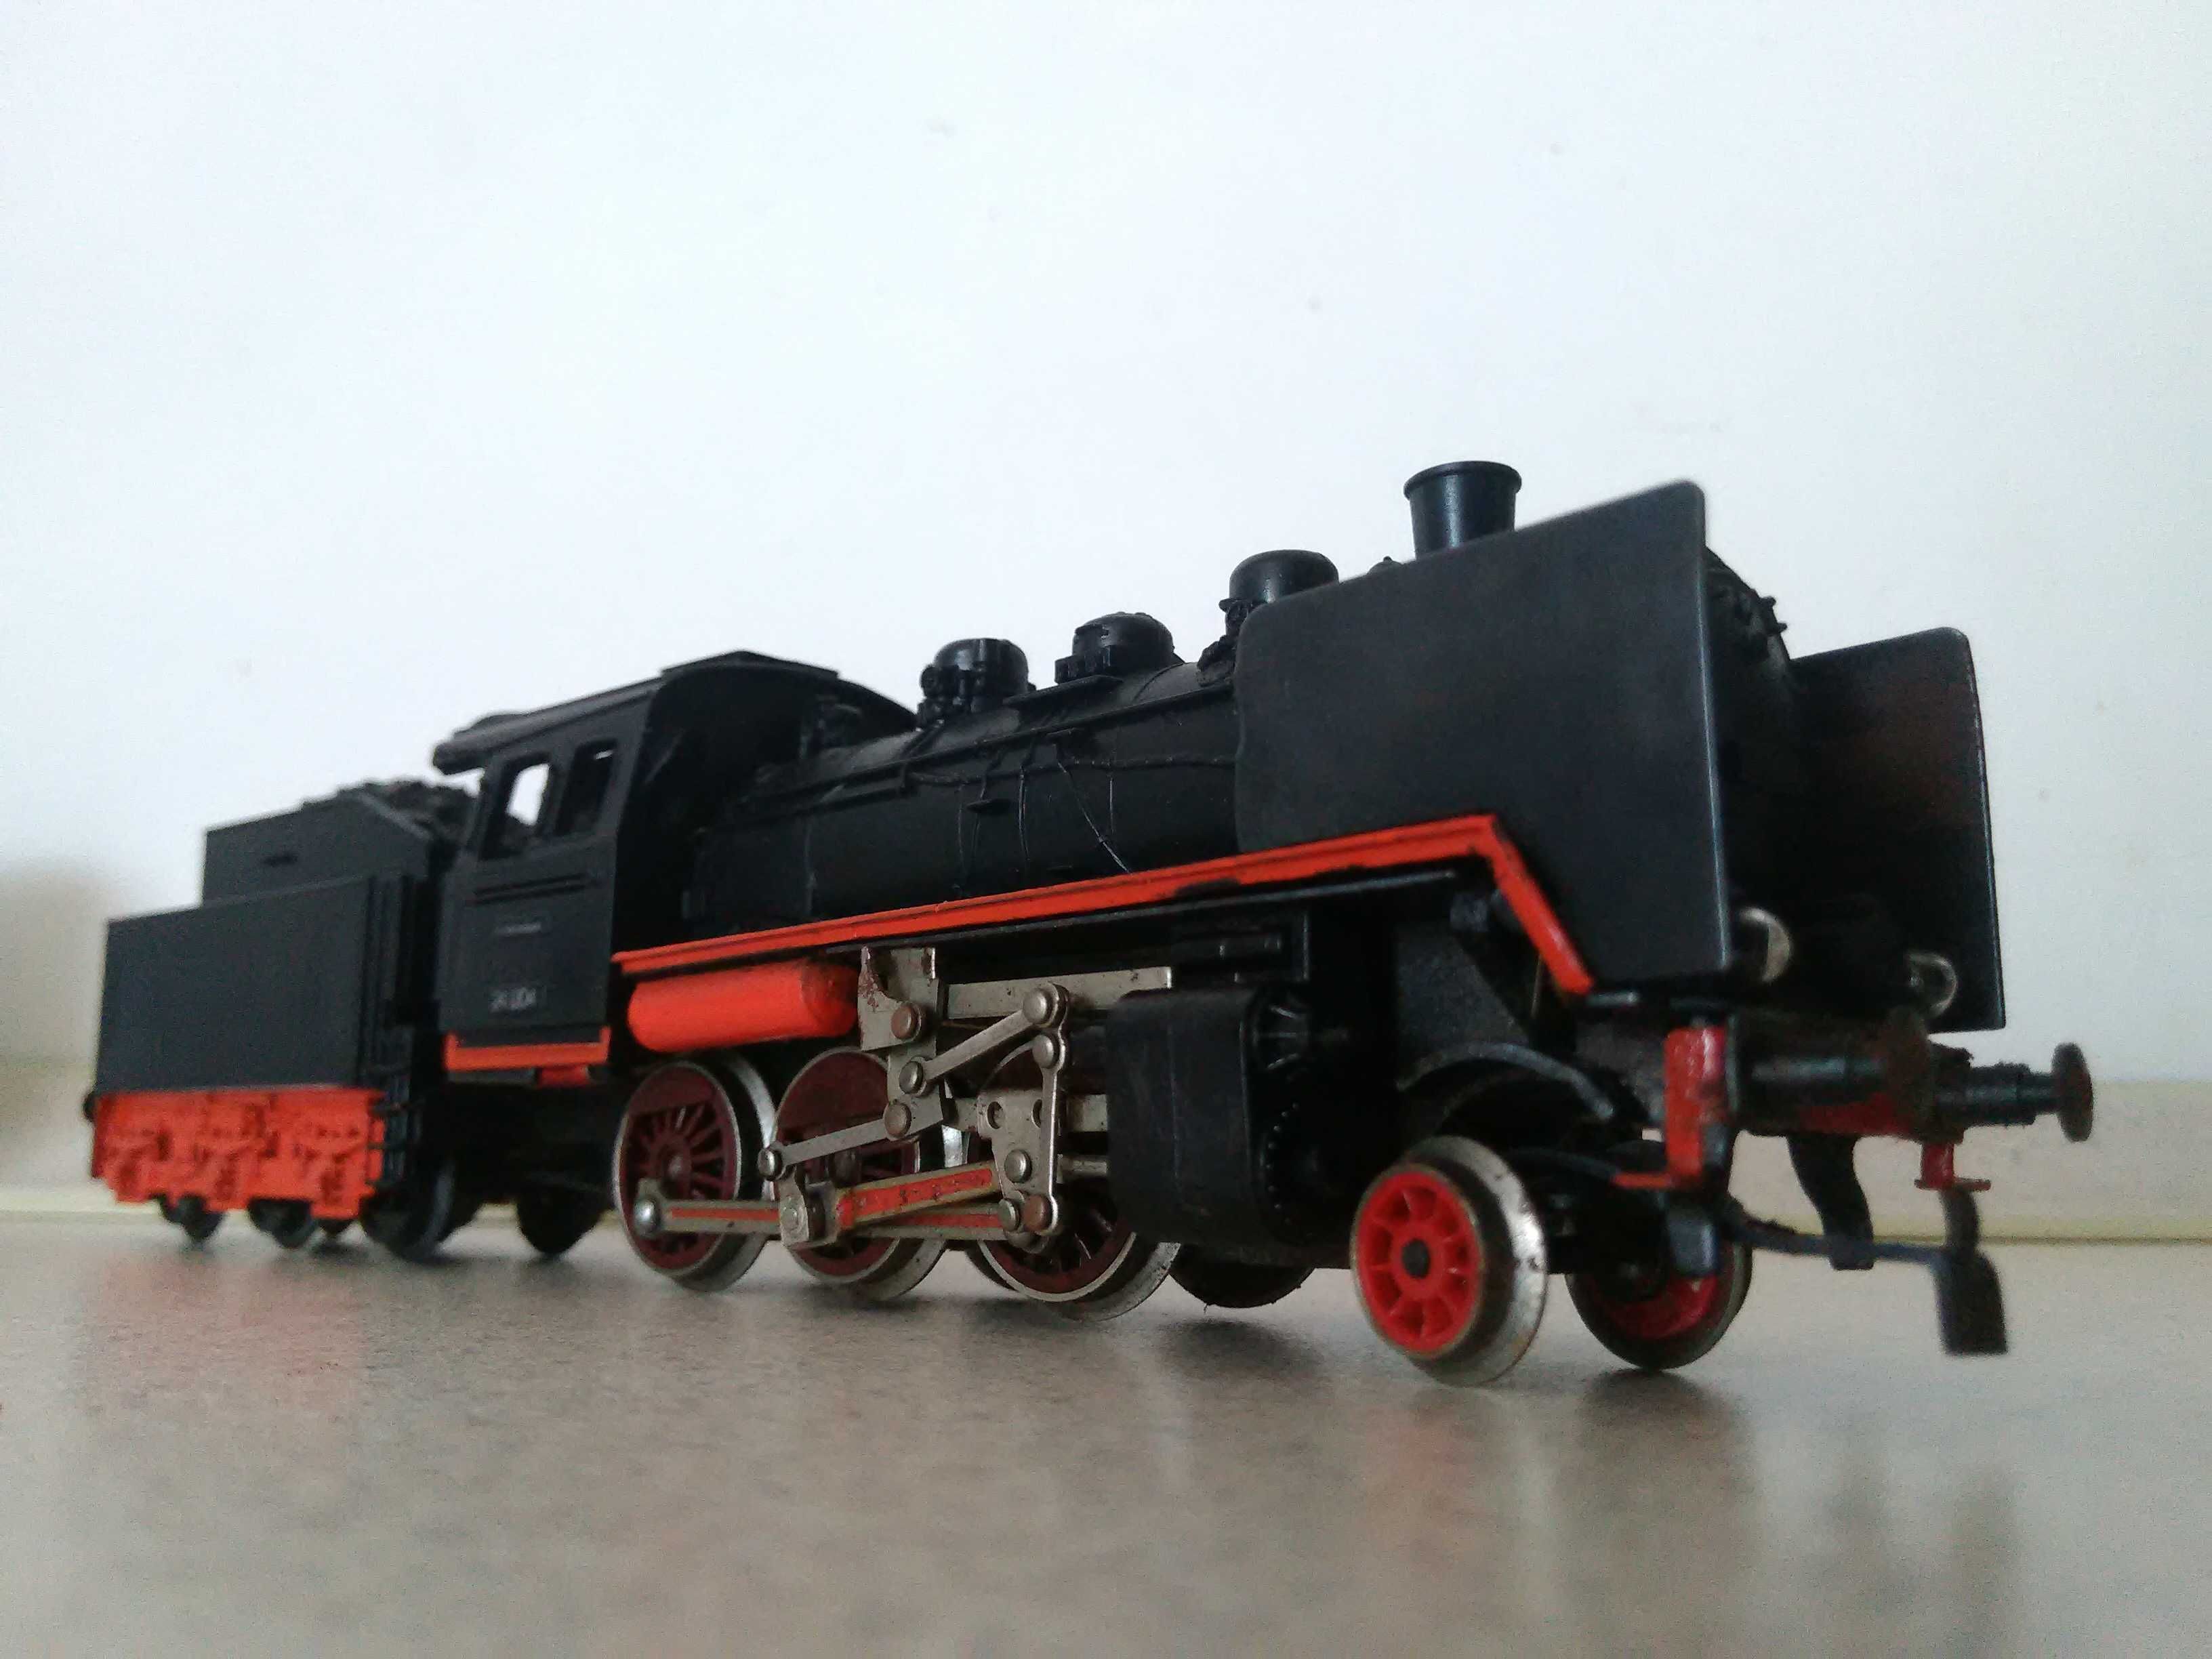 stara zabawka lokomotywa G10 Gutzold Piko parowóz br retro kolejka HO